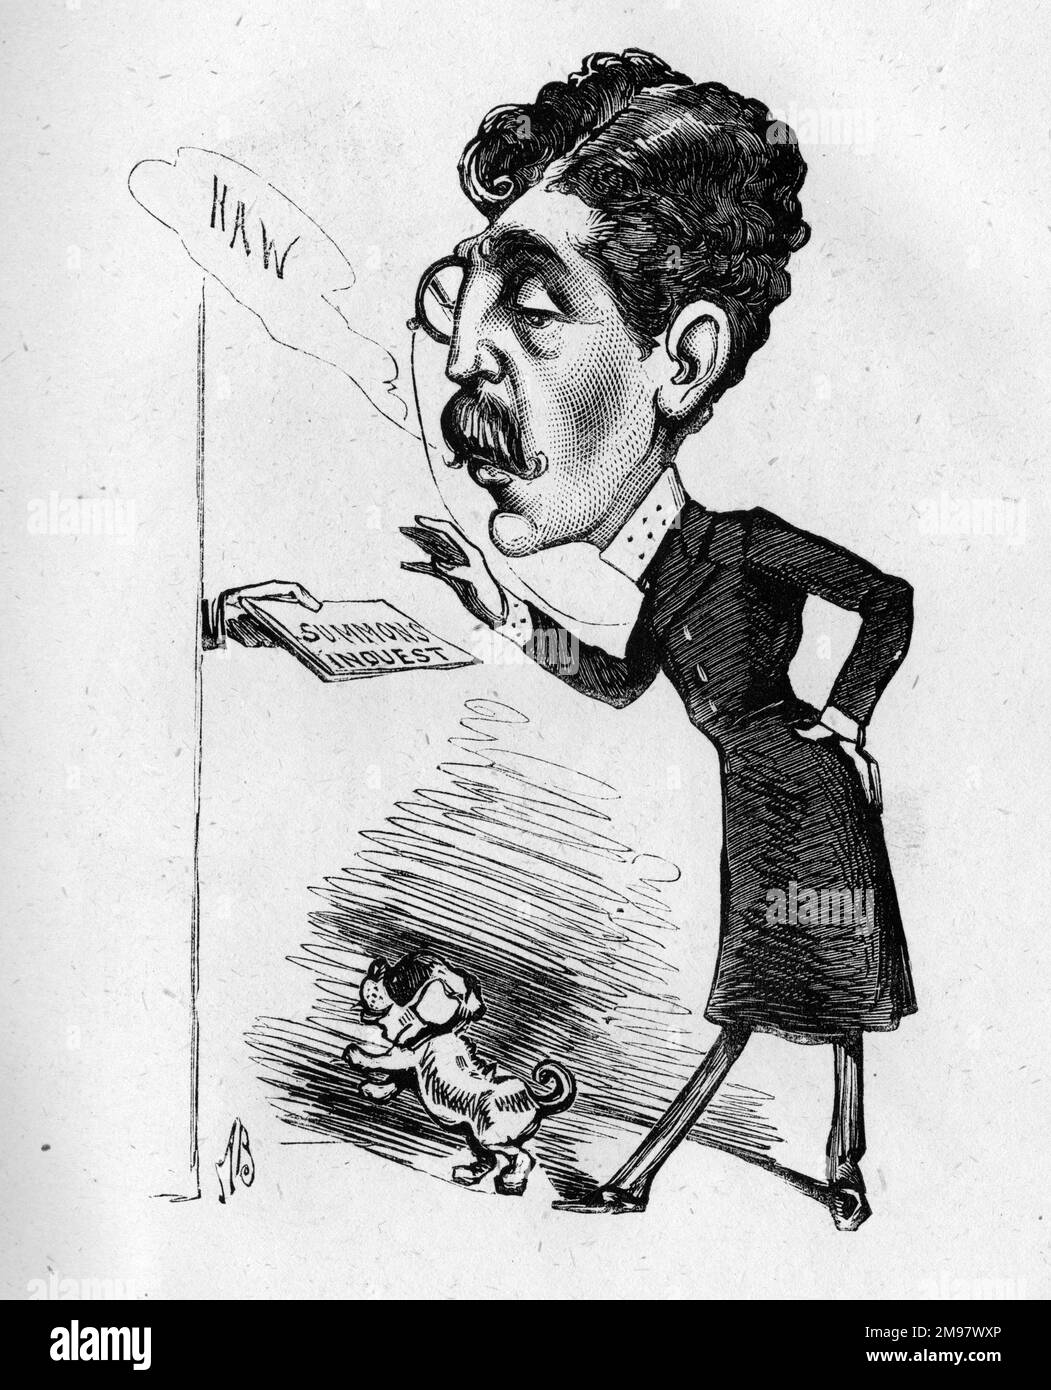 Caricatura del actor y gerente inglés Sir Squire Bancroft (1841-1926) -- ¡La idea de convocar a un actor de la sociedad como un jurado en una investigación de forense! Foto de stock